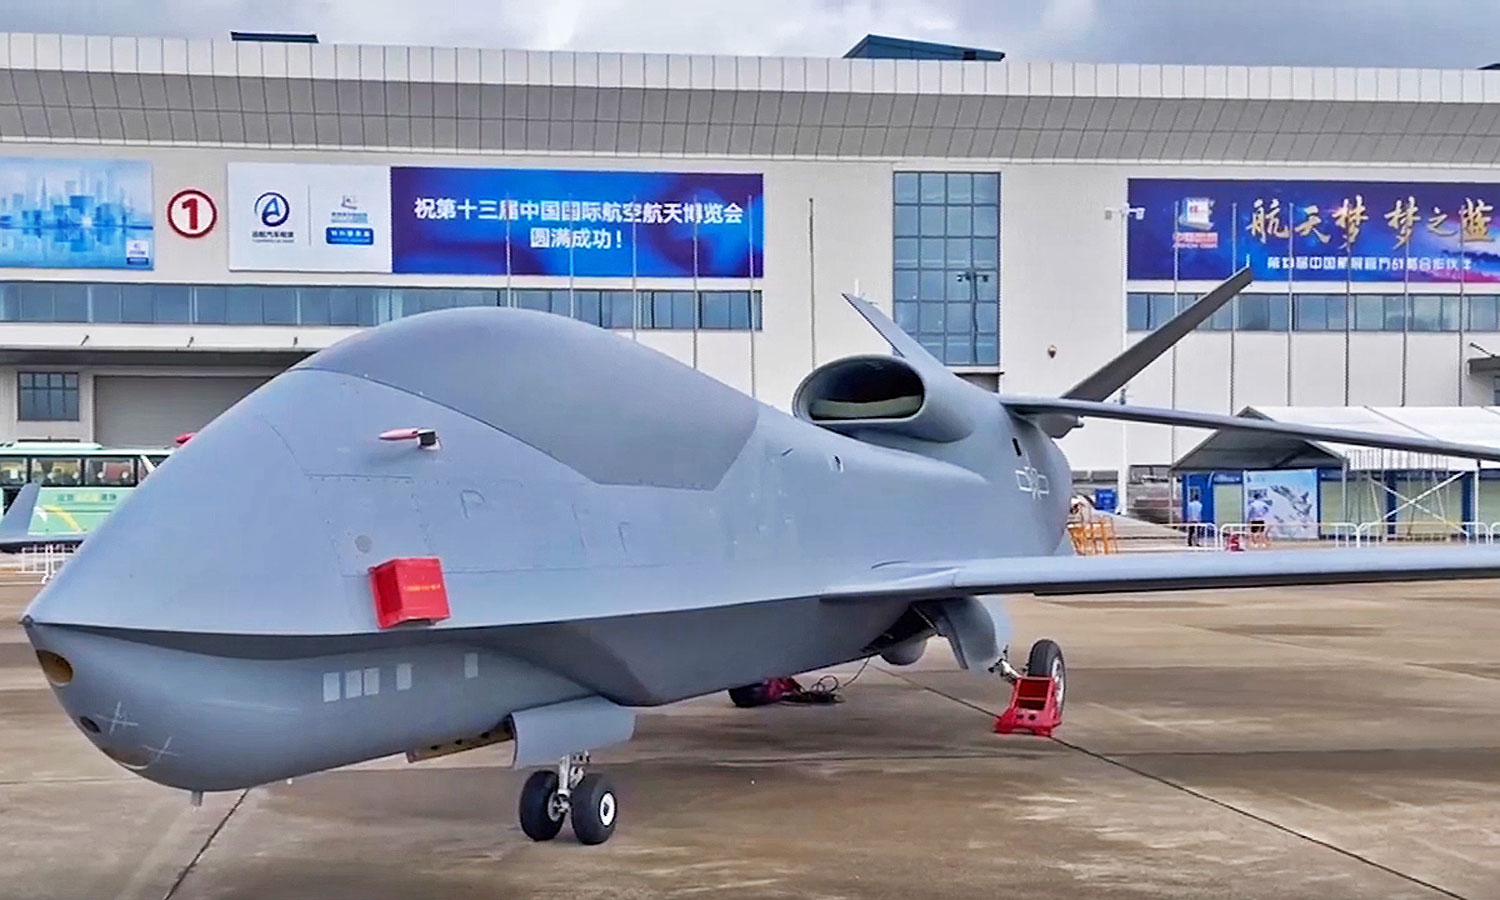 «ВО»: Китай показал свой новый разведывательный дрон WZ-7, похожий на MQ-4C Triton ВМС США